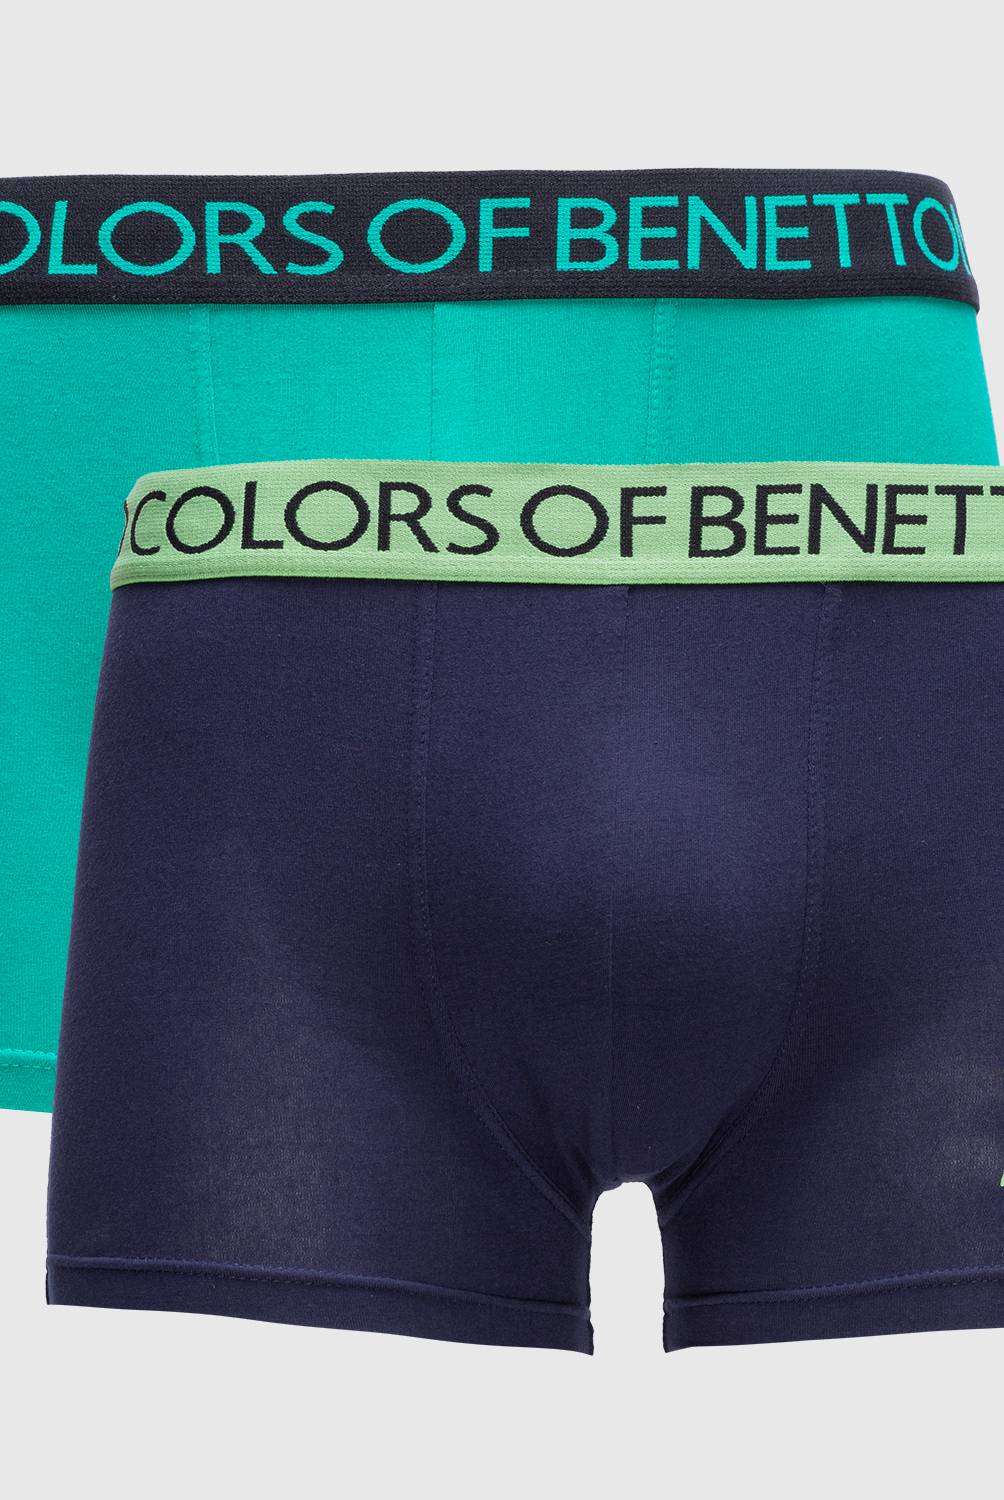 BENETTON - Benetton Pack de 2 Bóxer Algodón Hombre